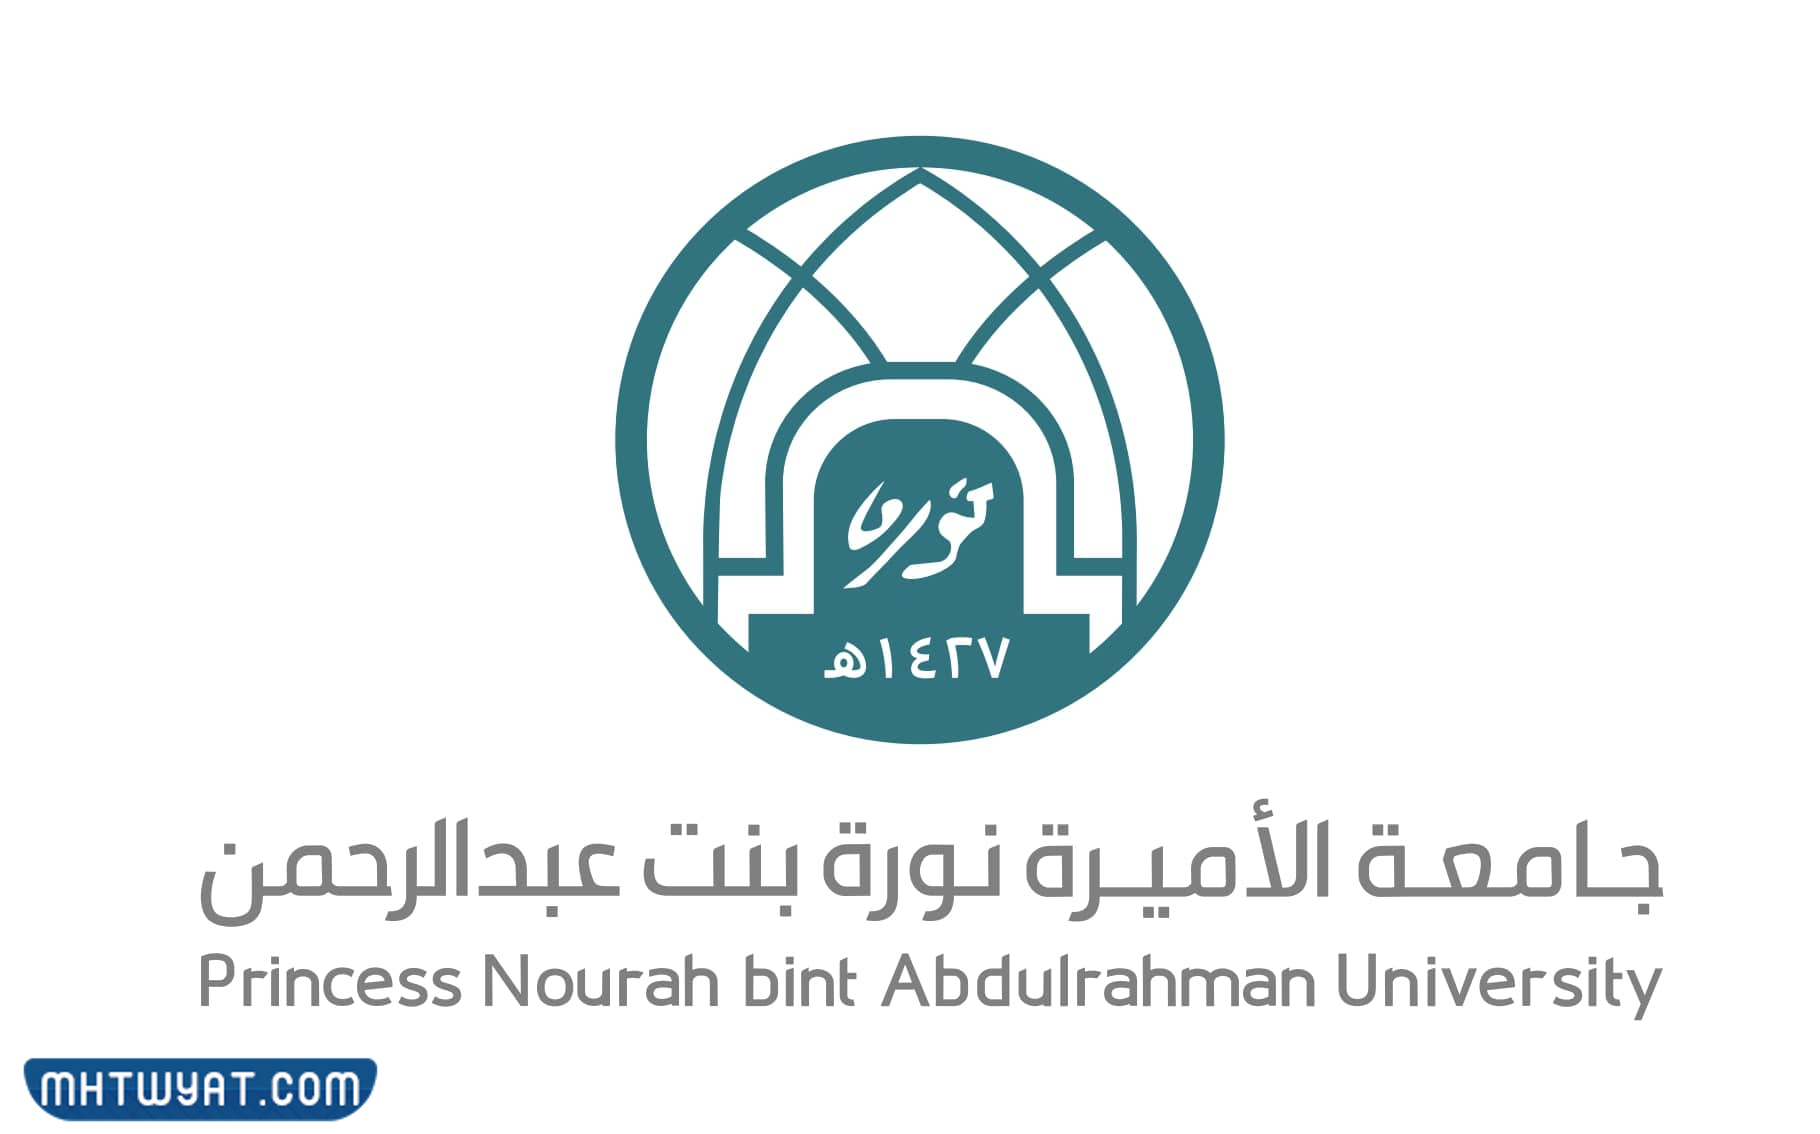 الجامعات الحكومية في الرياض